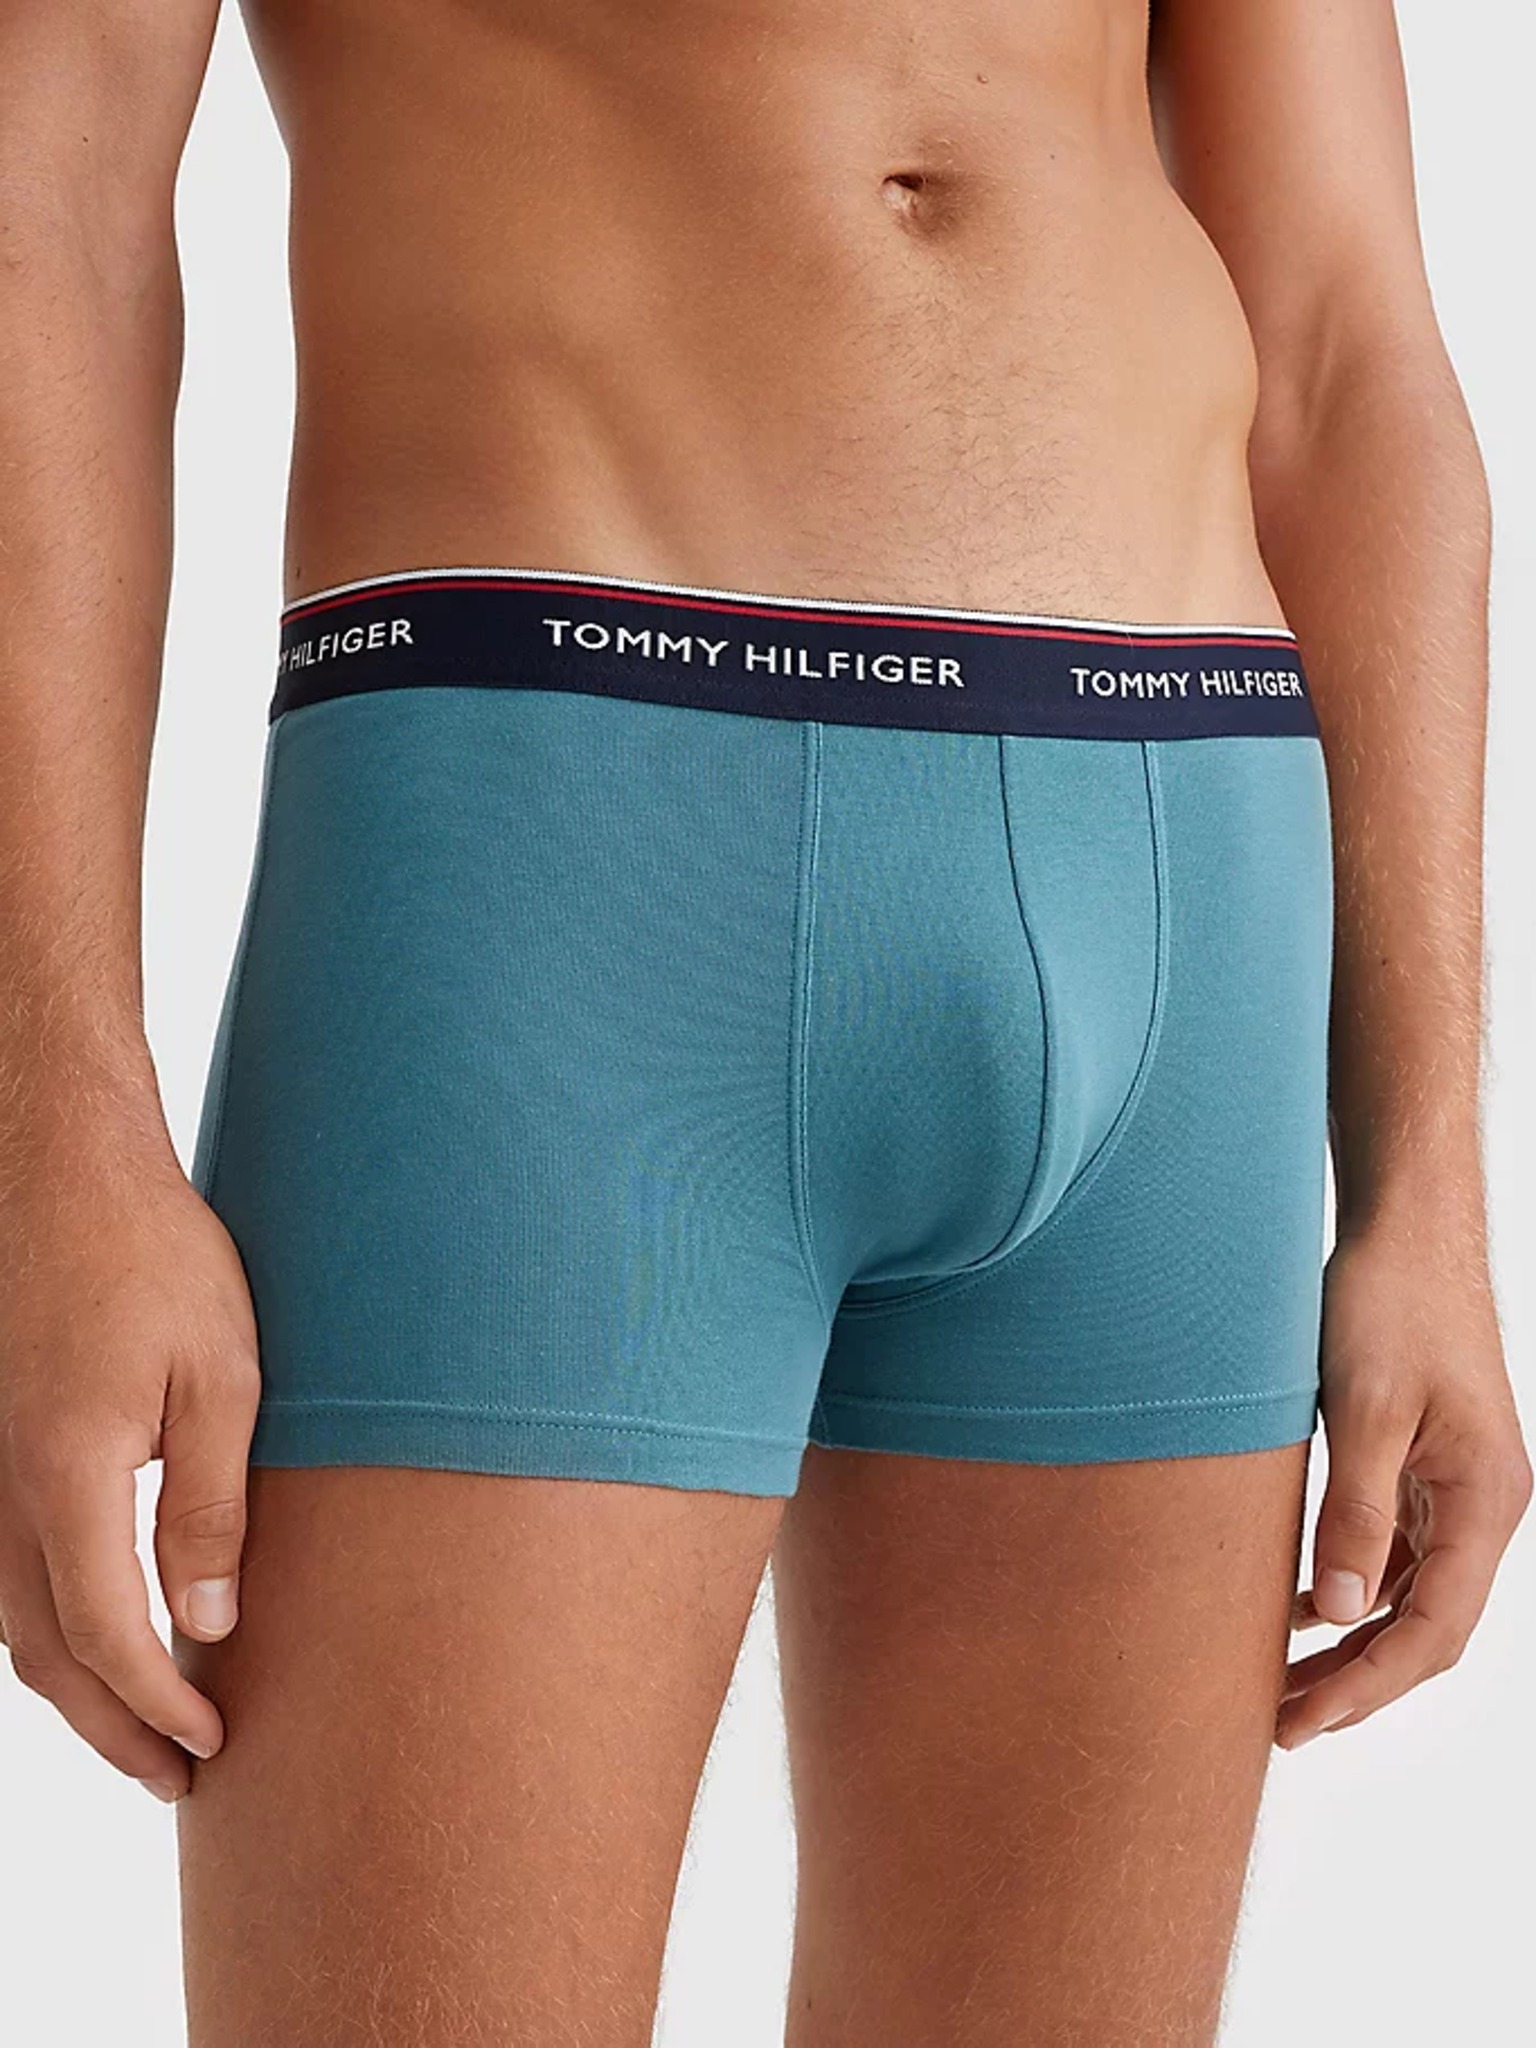 Tommy Hilfiger Underwear - Boxers 3 Piece